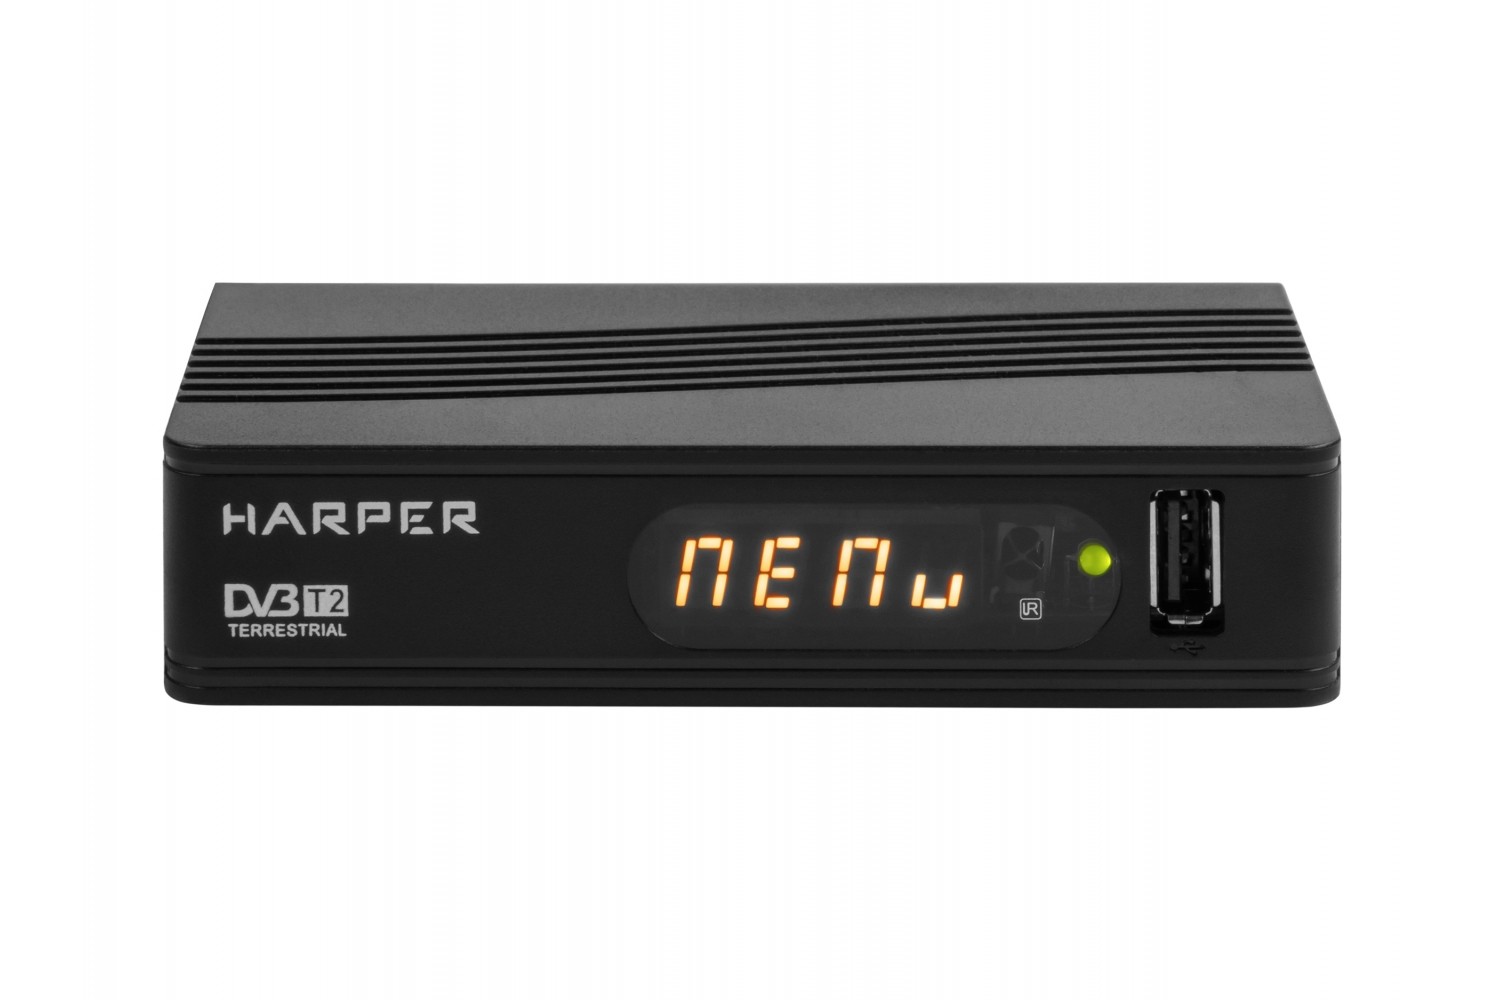  HARPER HDT2-1514 DVB-T2//MStar